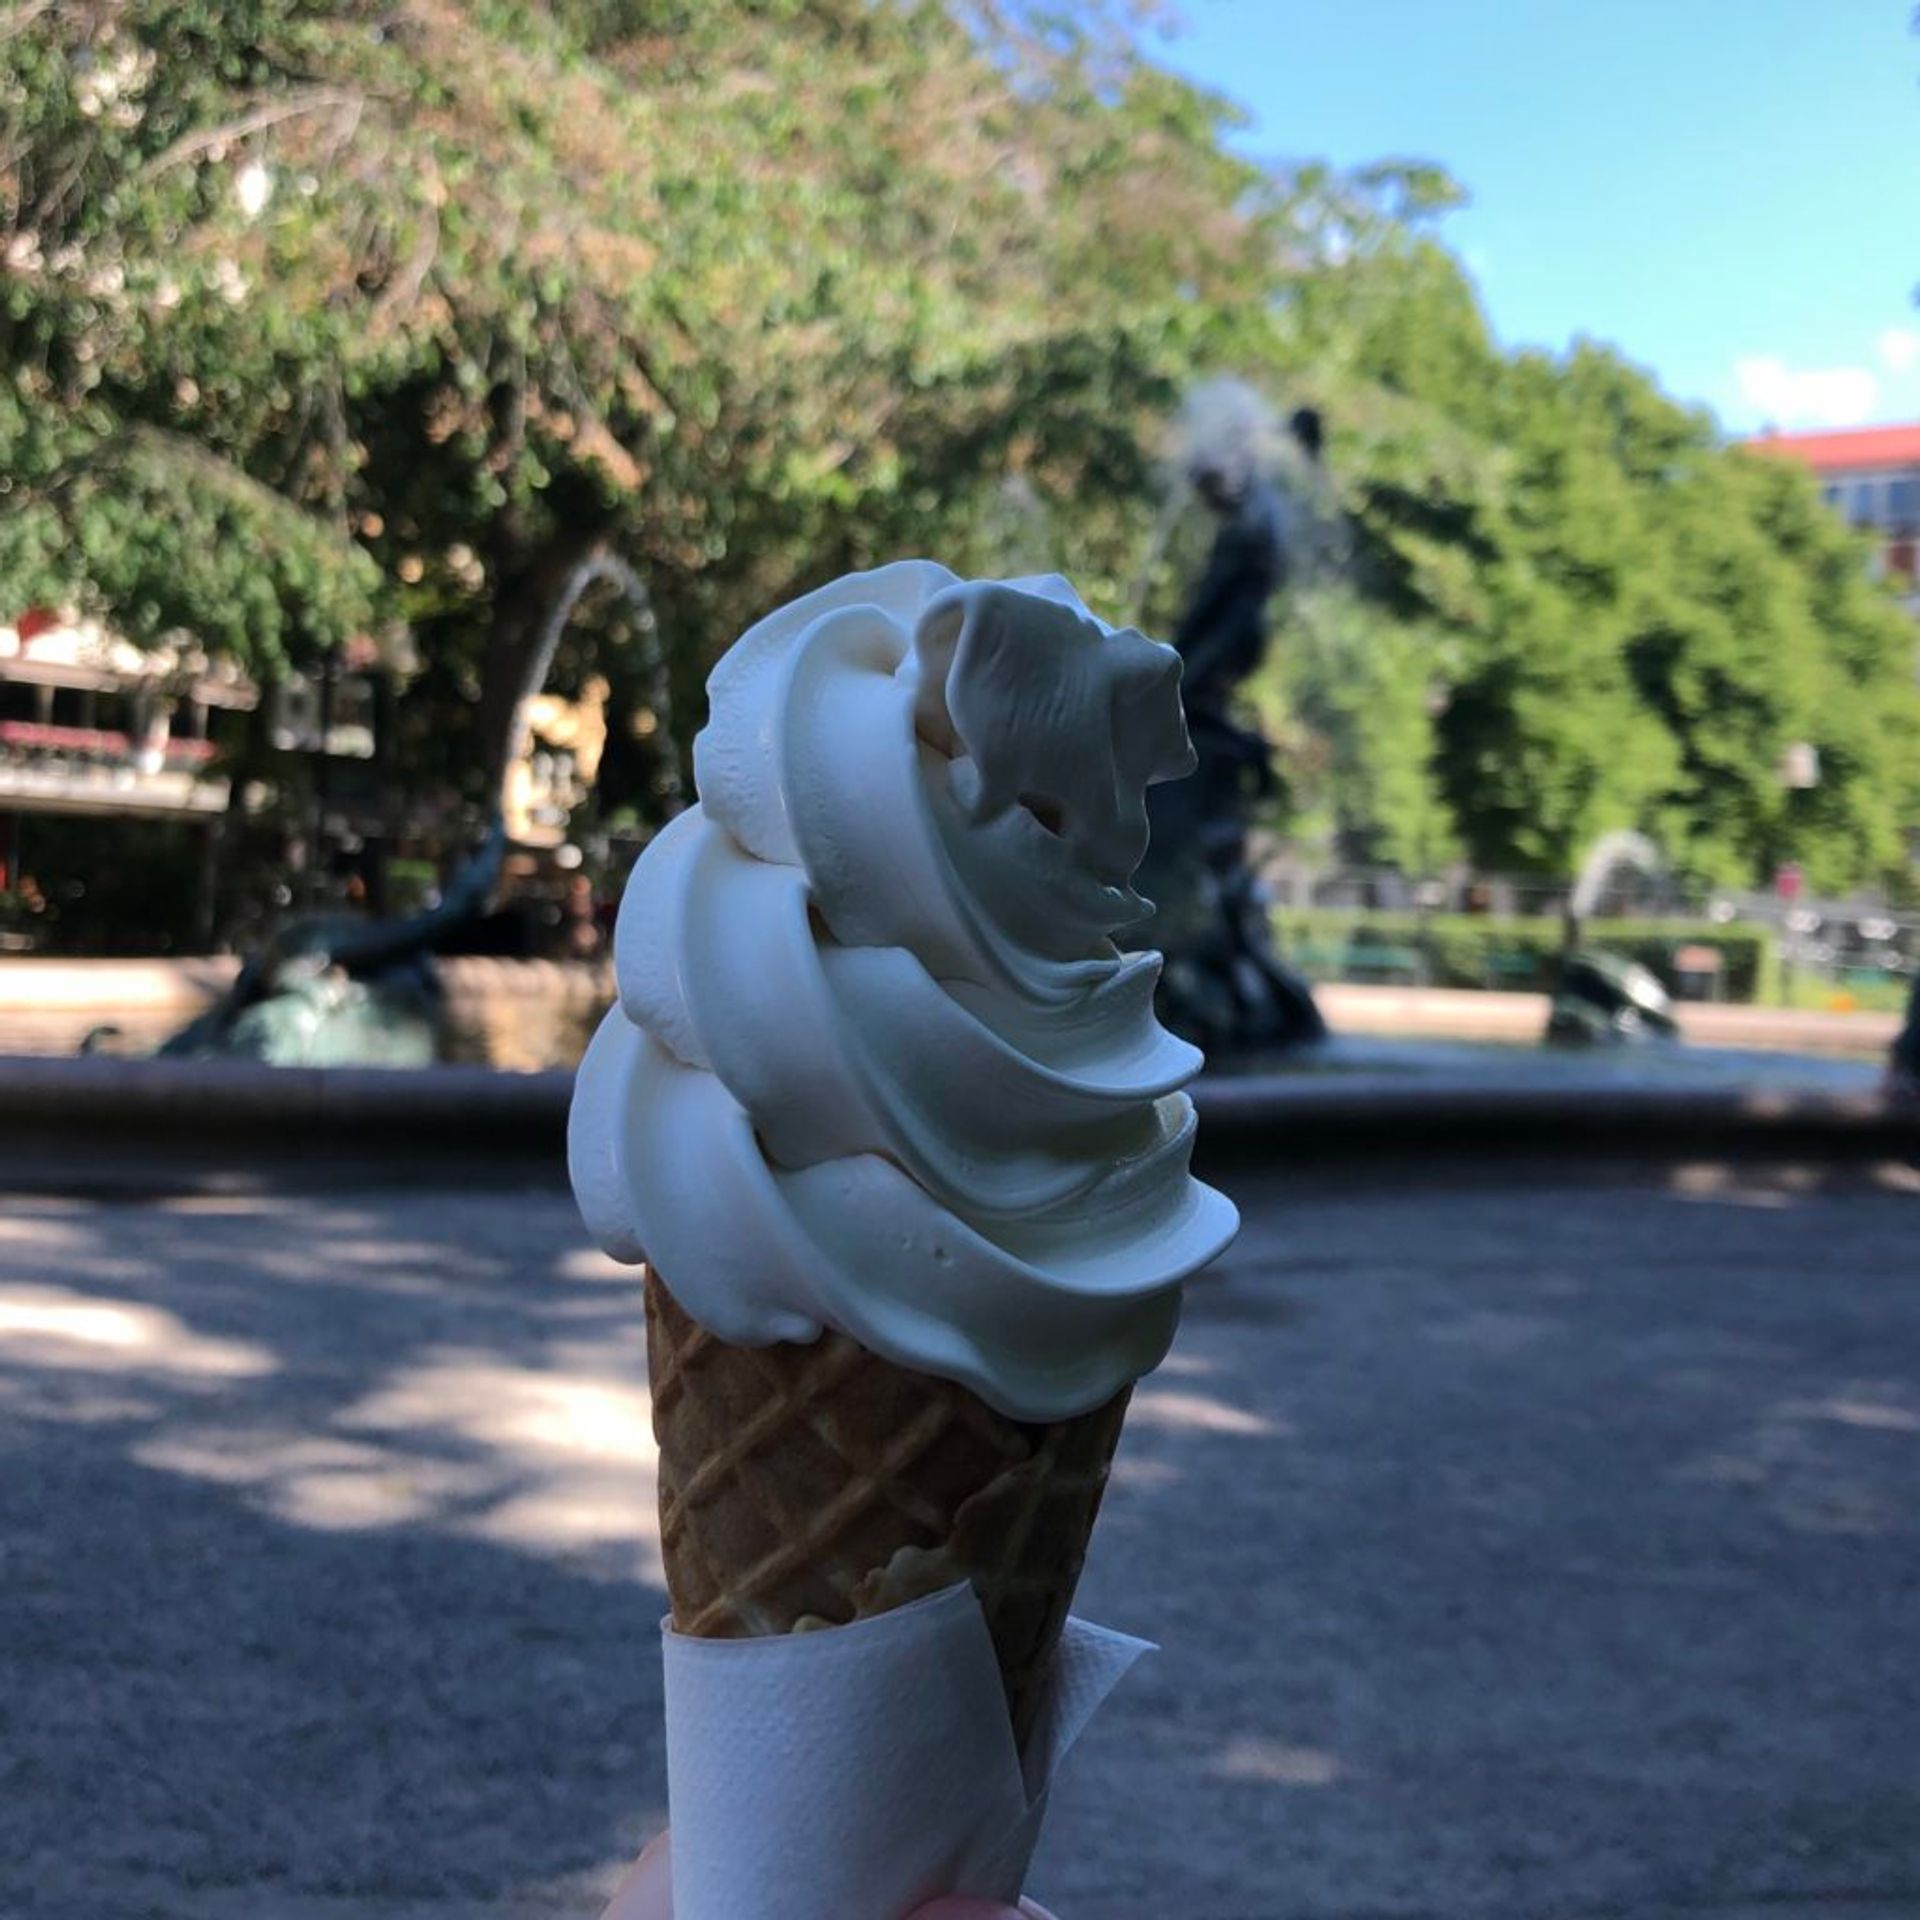 Soft serve ice cream in a cone.